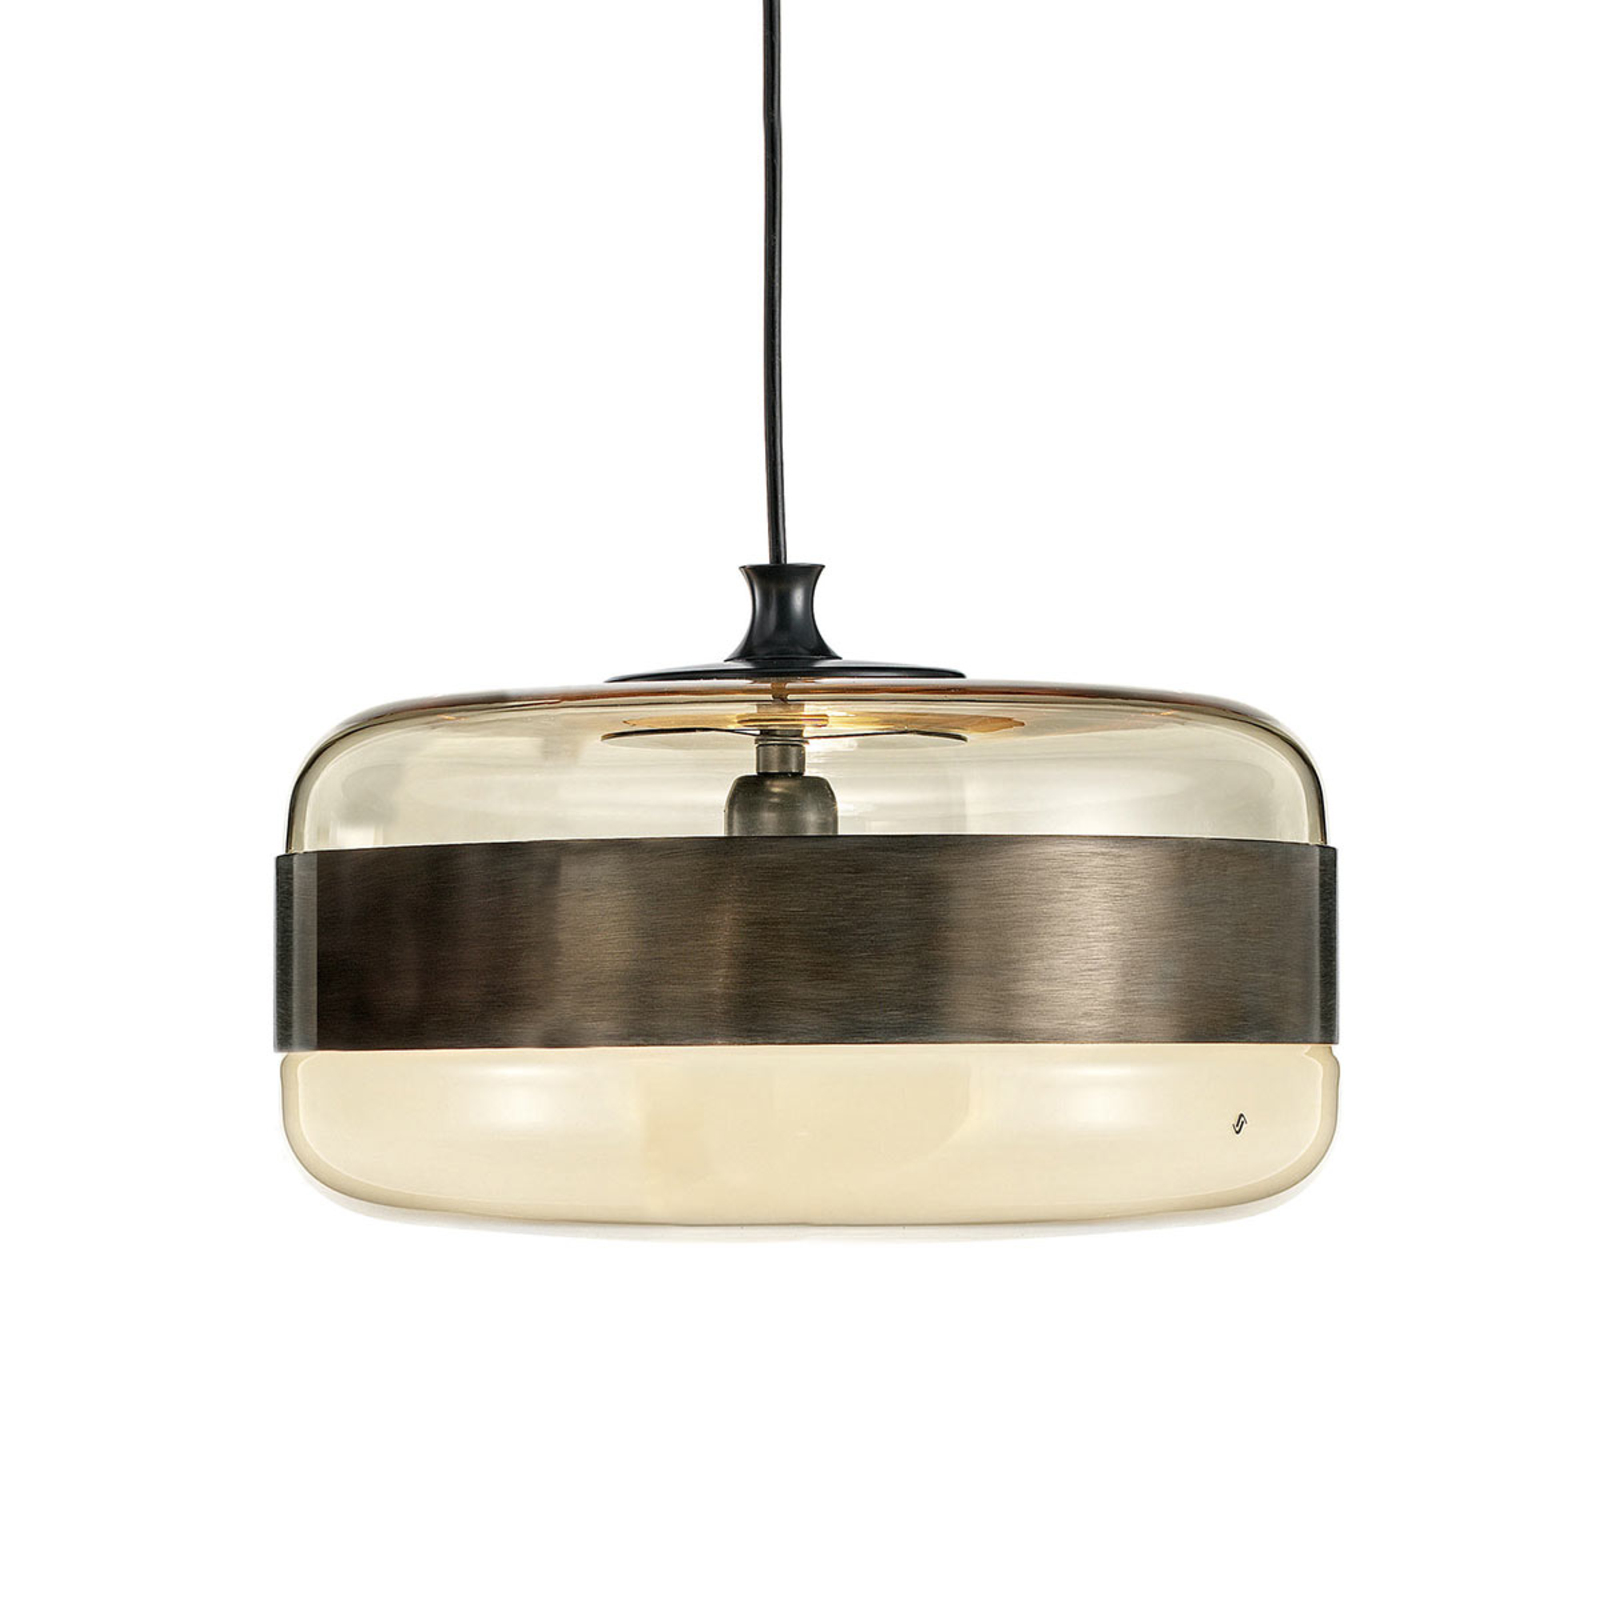 ik ben slaperig Voorwaardelijk Wijzerplaat Glazen hanglamp Futura in brons, 40 cm | Lampen24.nl